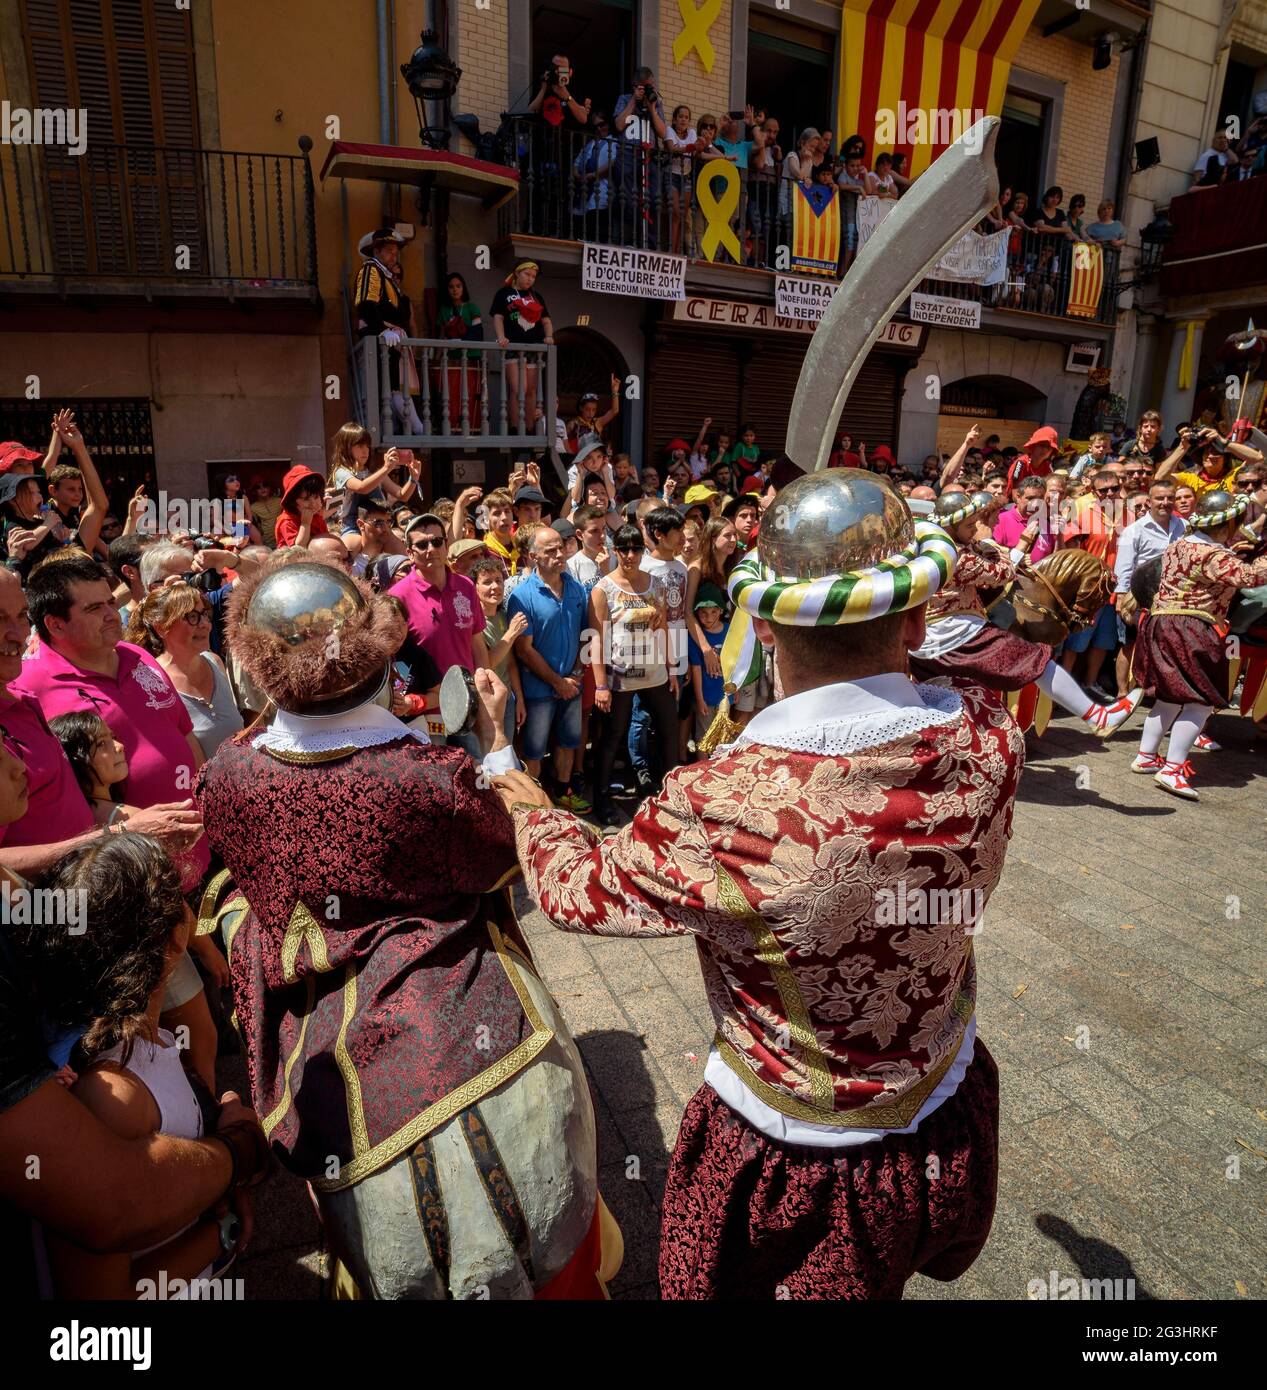 Danza dei Turchi i Cavallets (Turchi e cavalli) nel festival Patum de Berga, patrimonio culturale immateriale mondiale dell'UNESCO (Catalogna, Spagna) Foto Stock